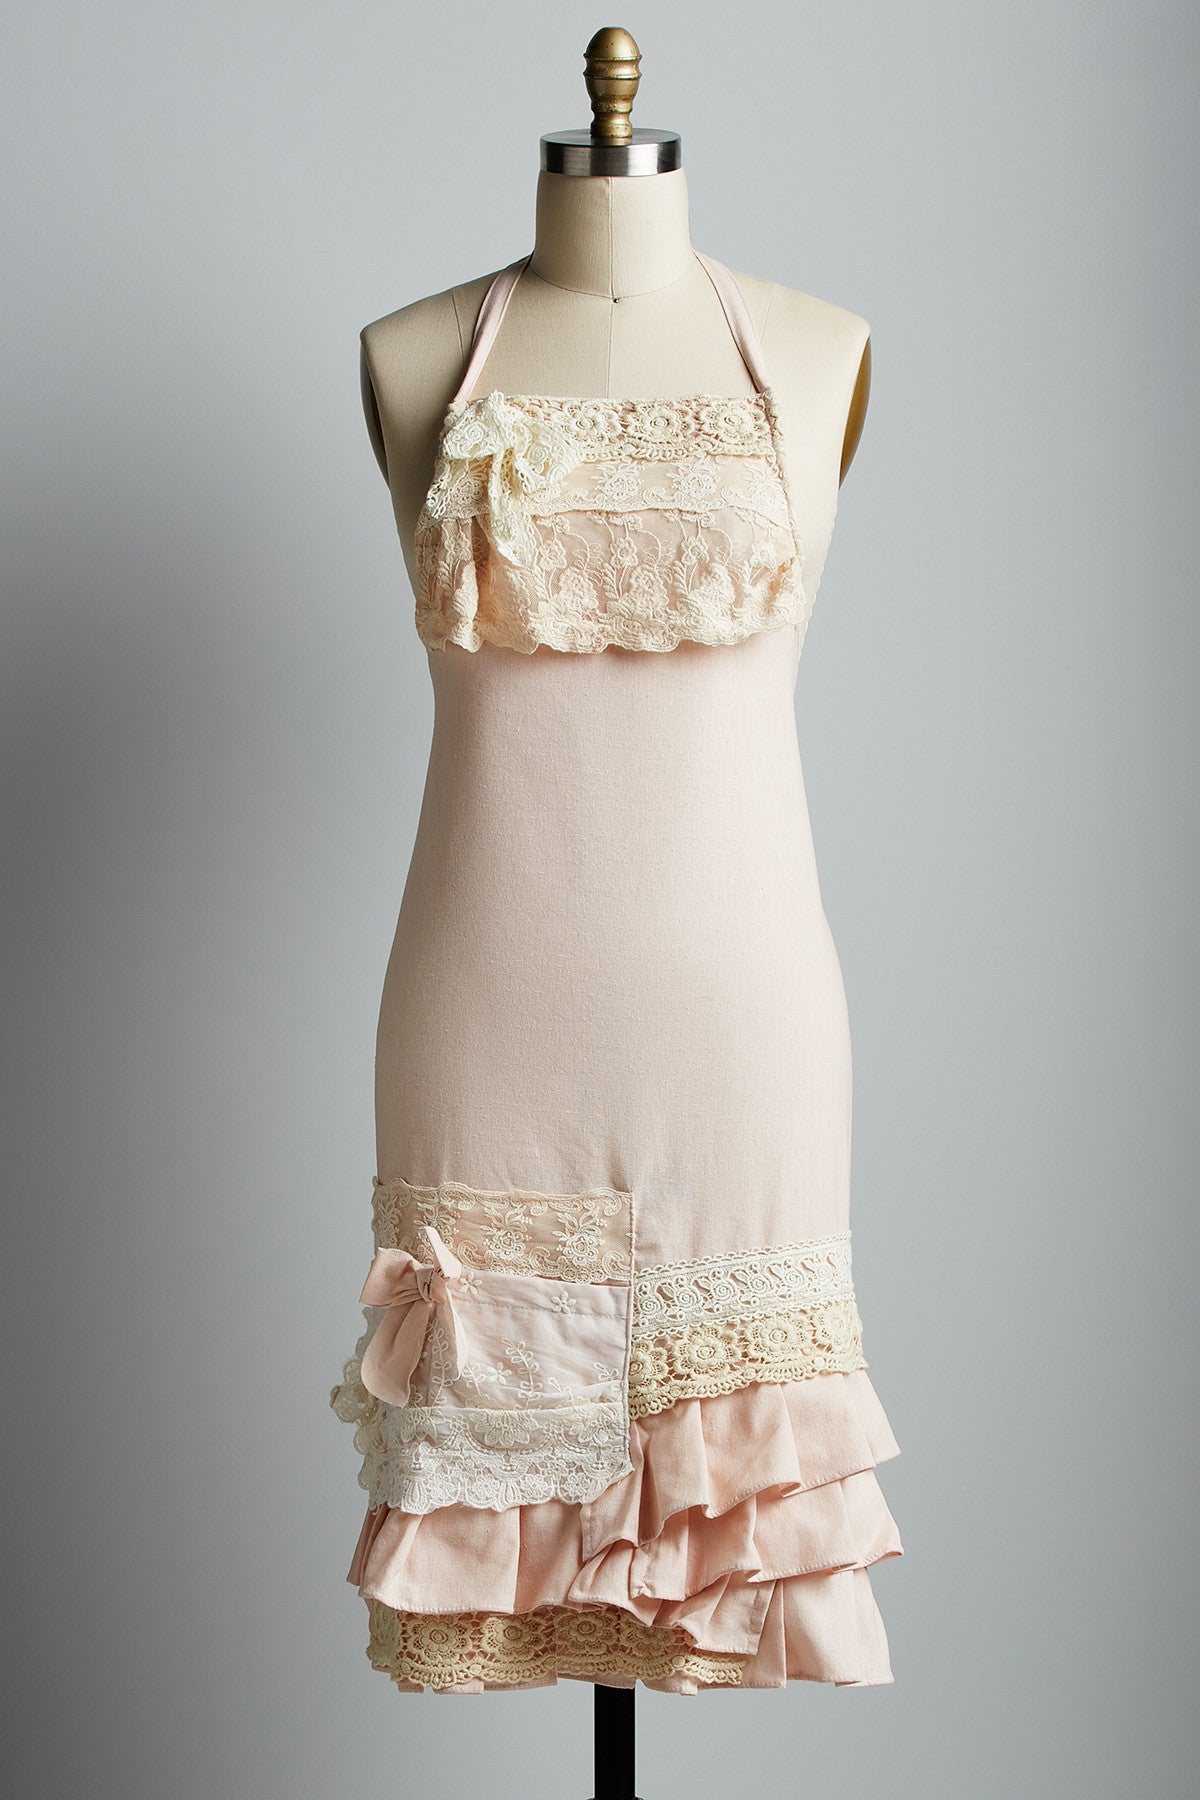 Miss Violet's Apron. linen and lace apron. Pale pink linen